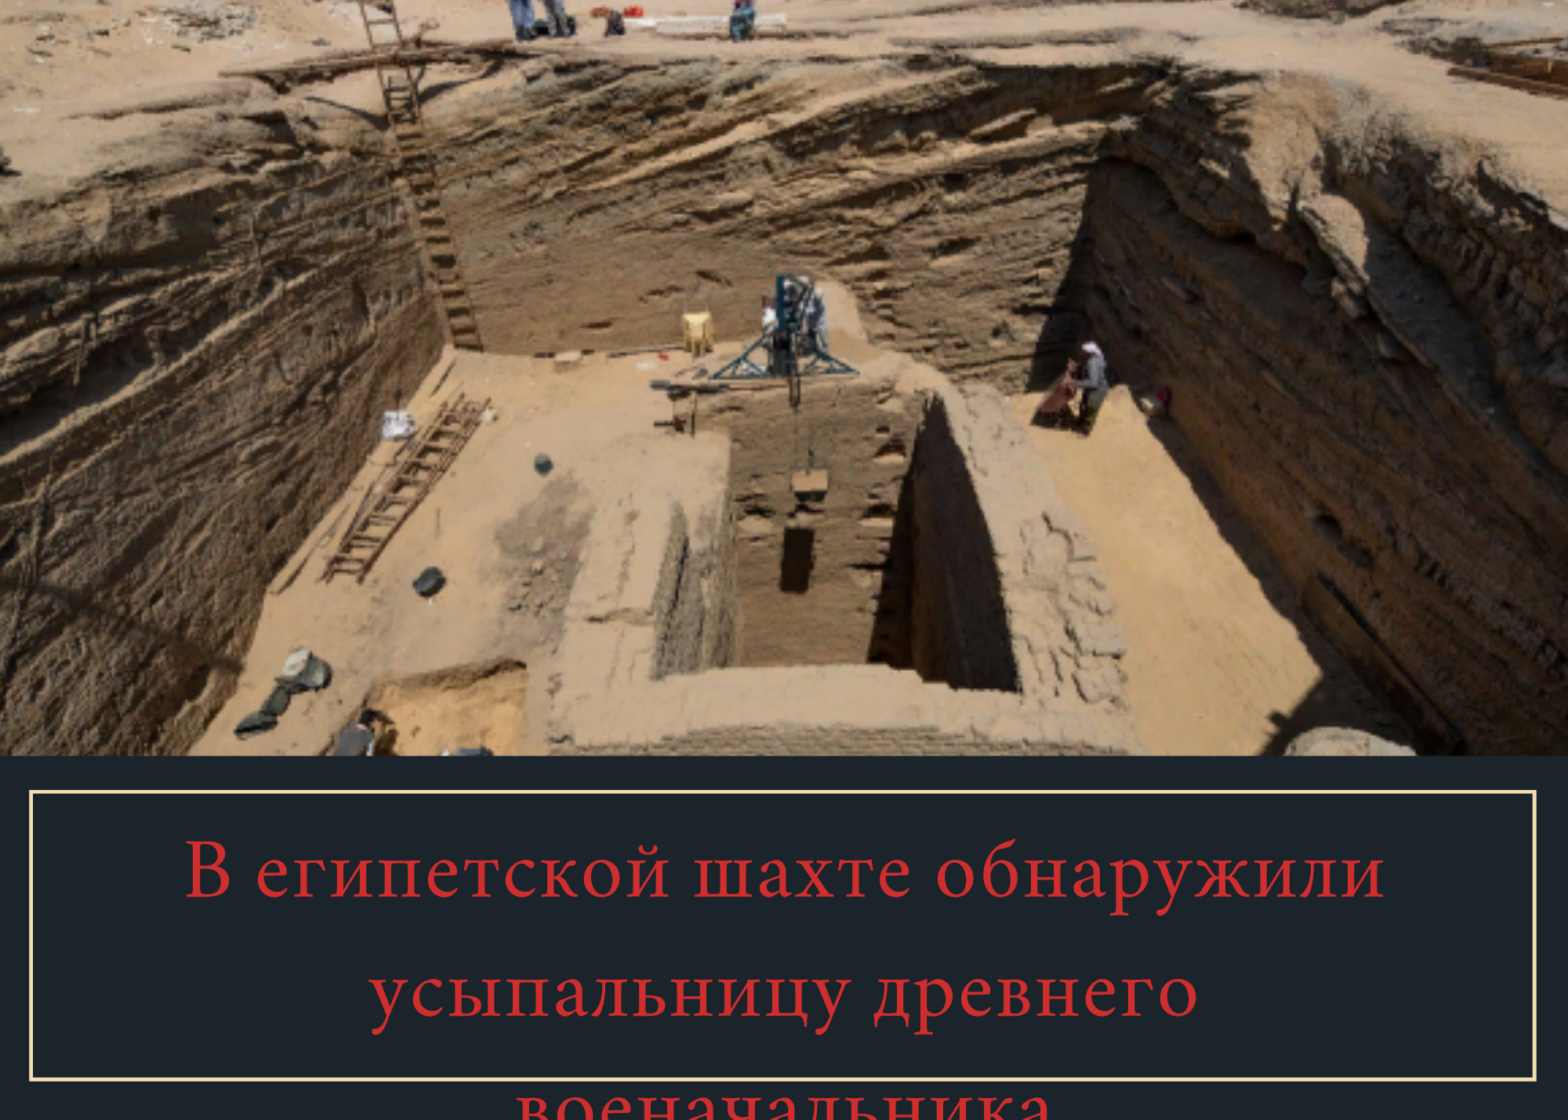 В египетской шахте обнаружили усыпальницу древнего военачальника